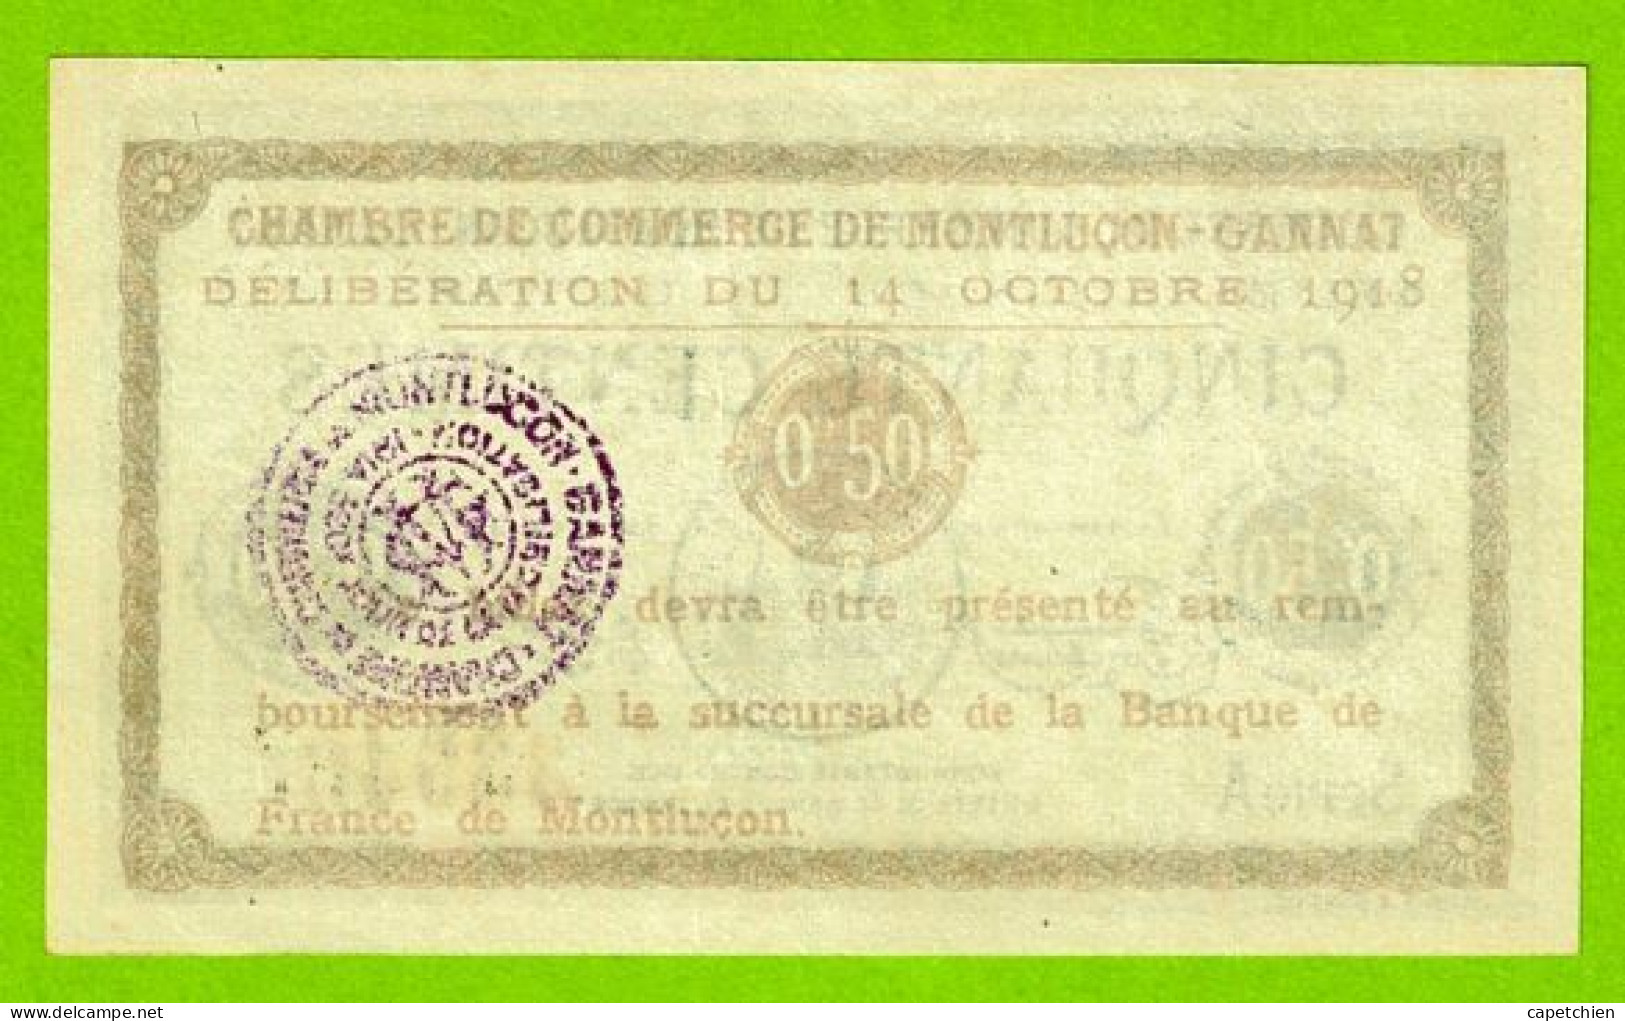 FRANCE / CHAMBRE De COMMERCE De MONTLUÇON - GANNAT /50 CENTIMES / 14 OCTOBRE 1918  N° 33946 / SERIE A / NEUF - Chambre De Commerce